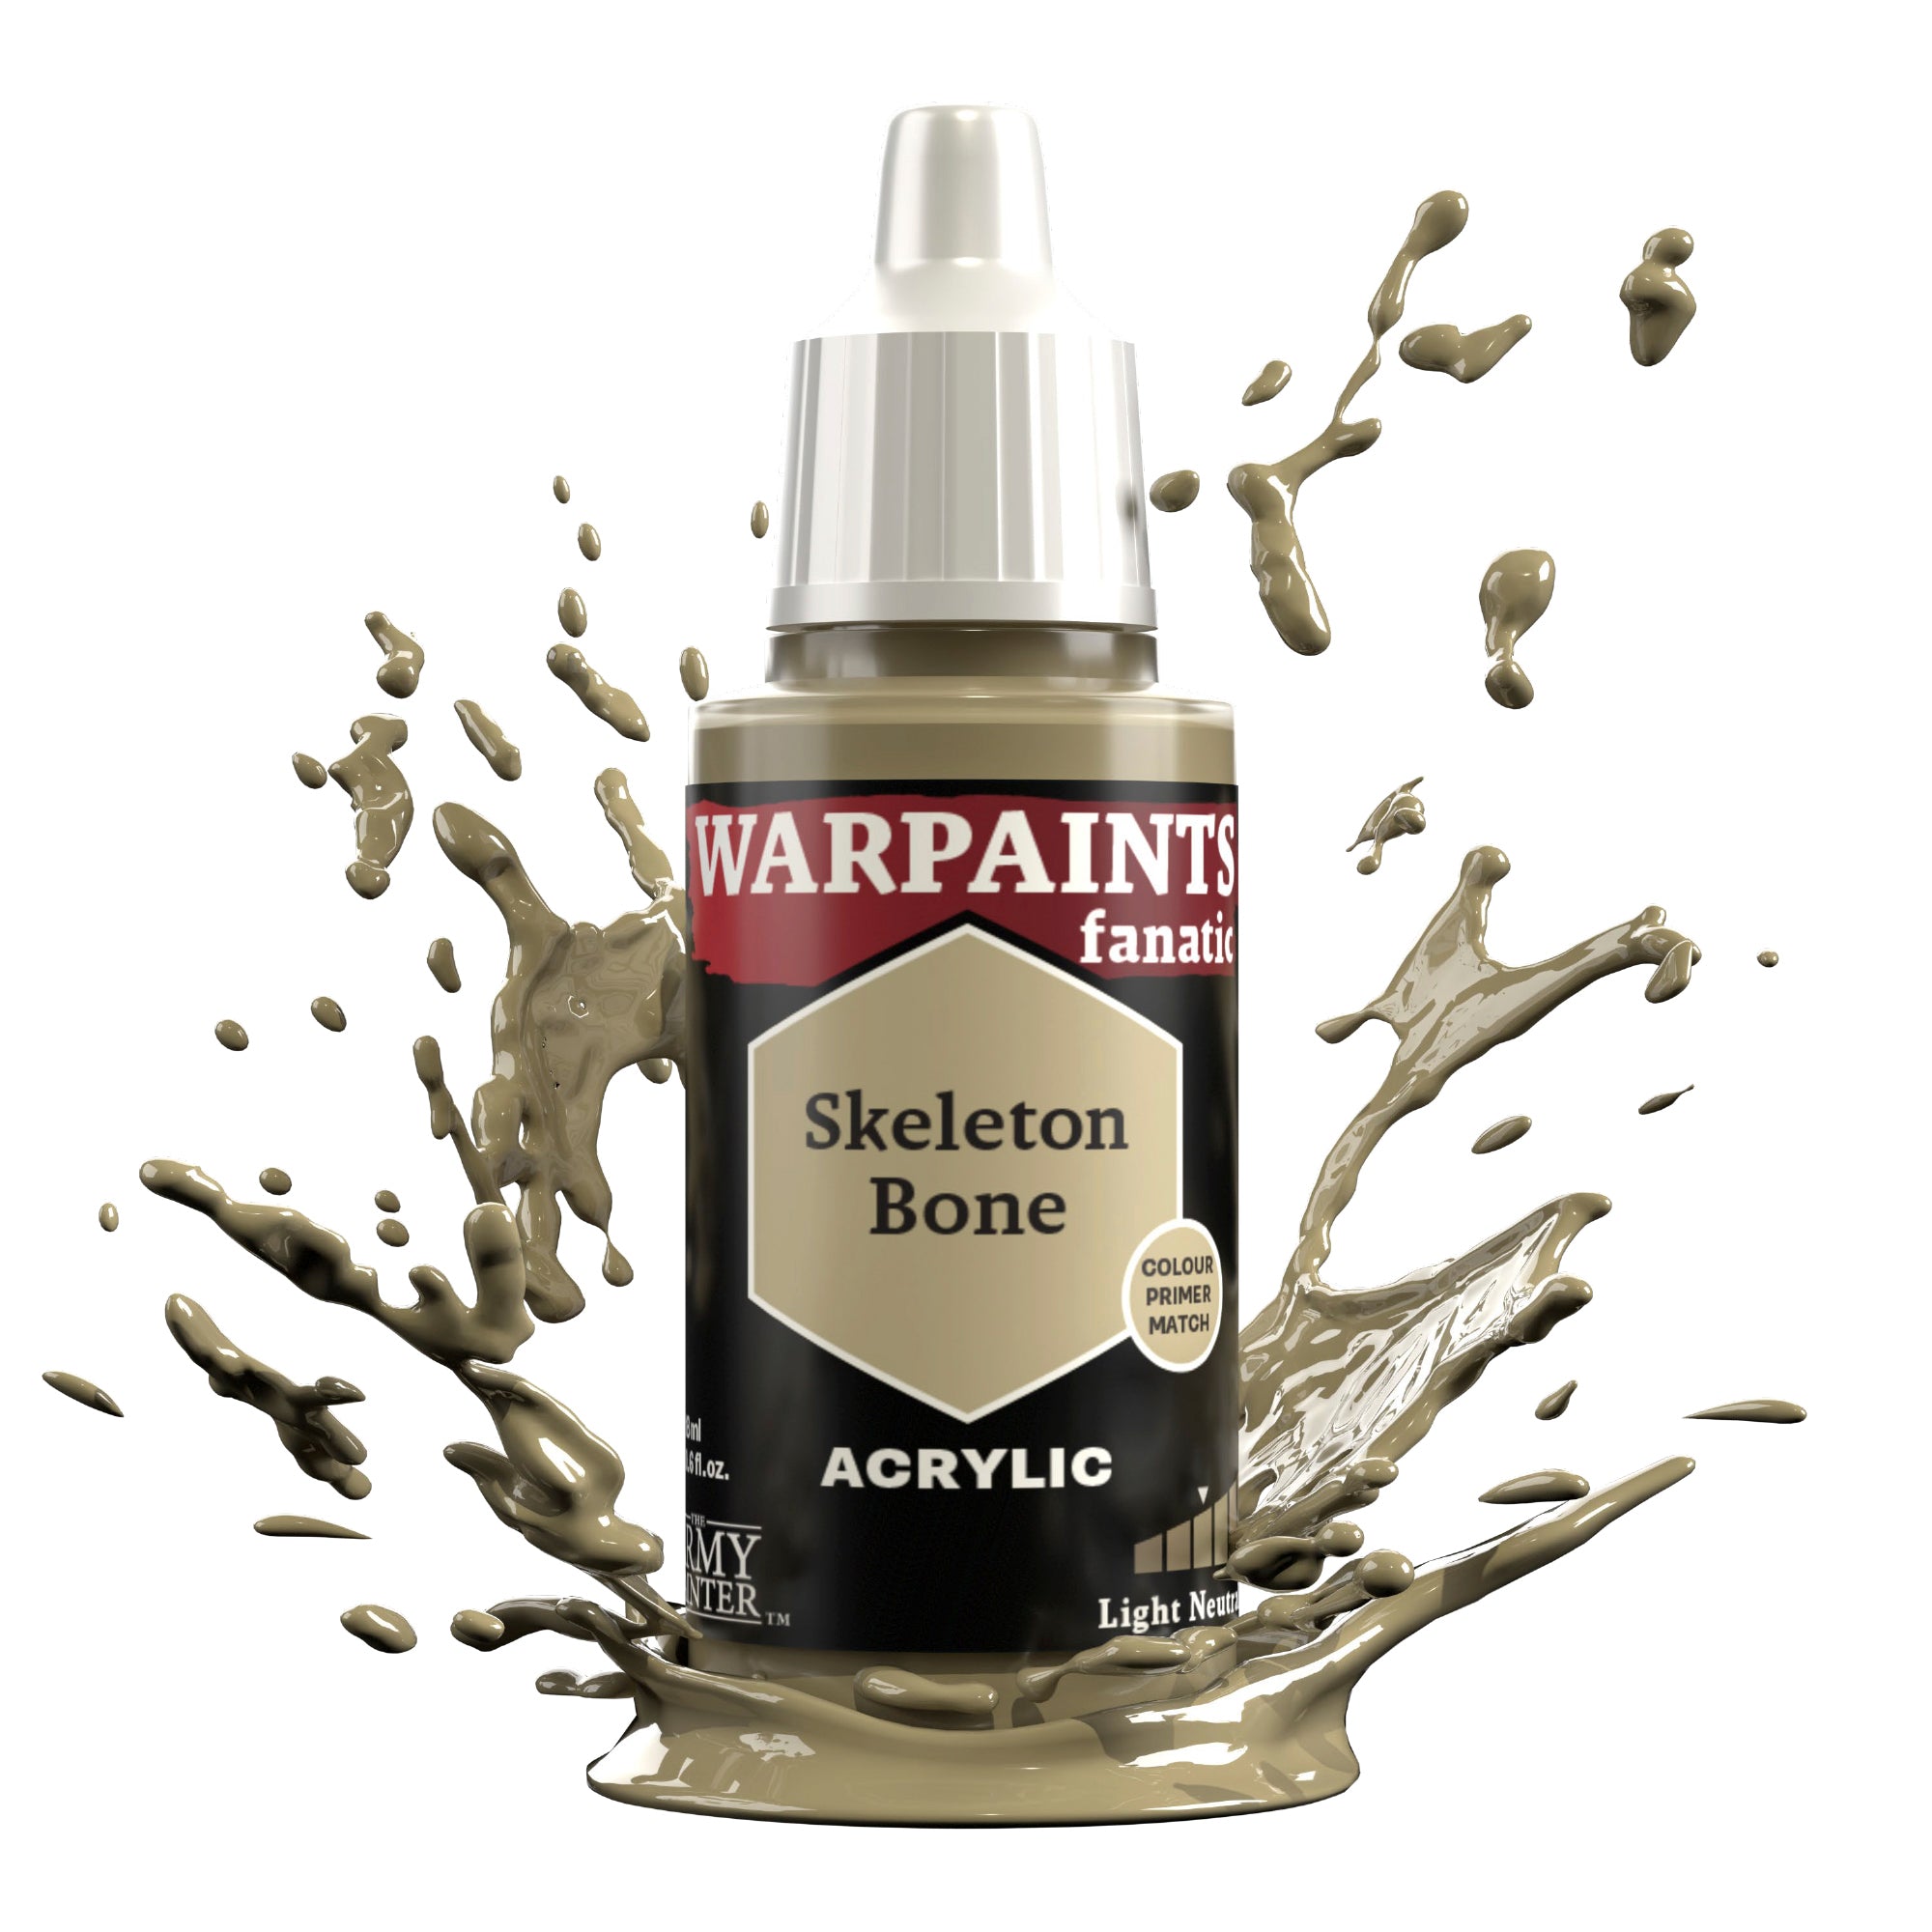 Warpaints Fanatic: Skeleton Bone